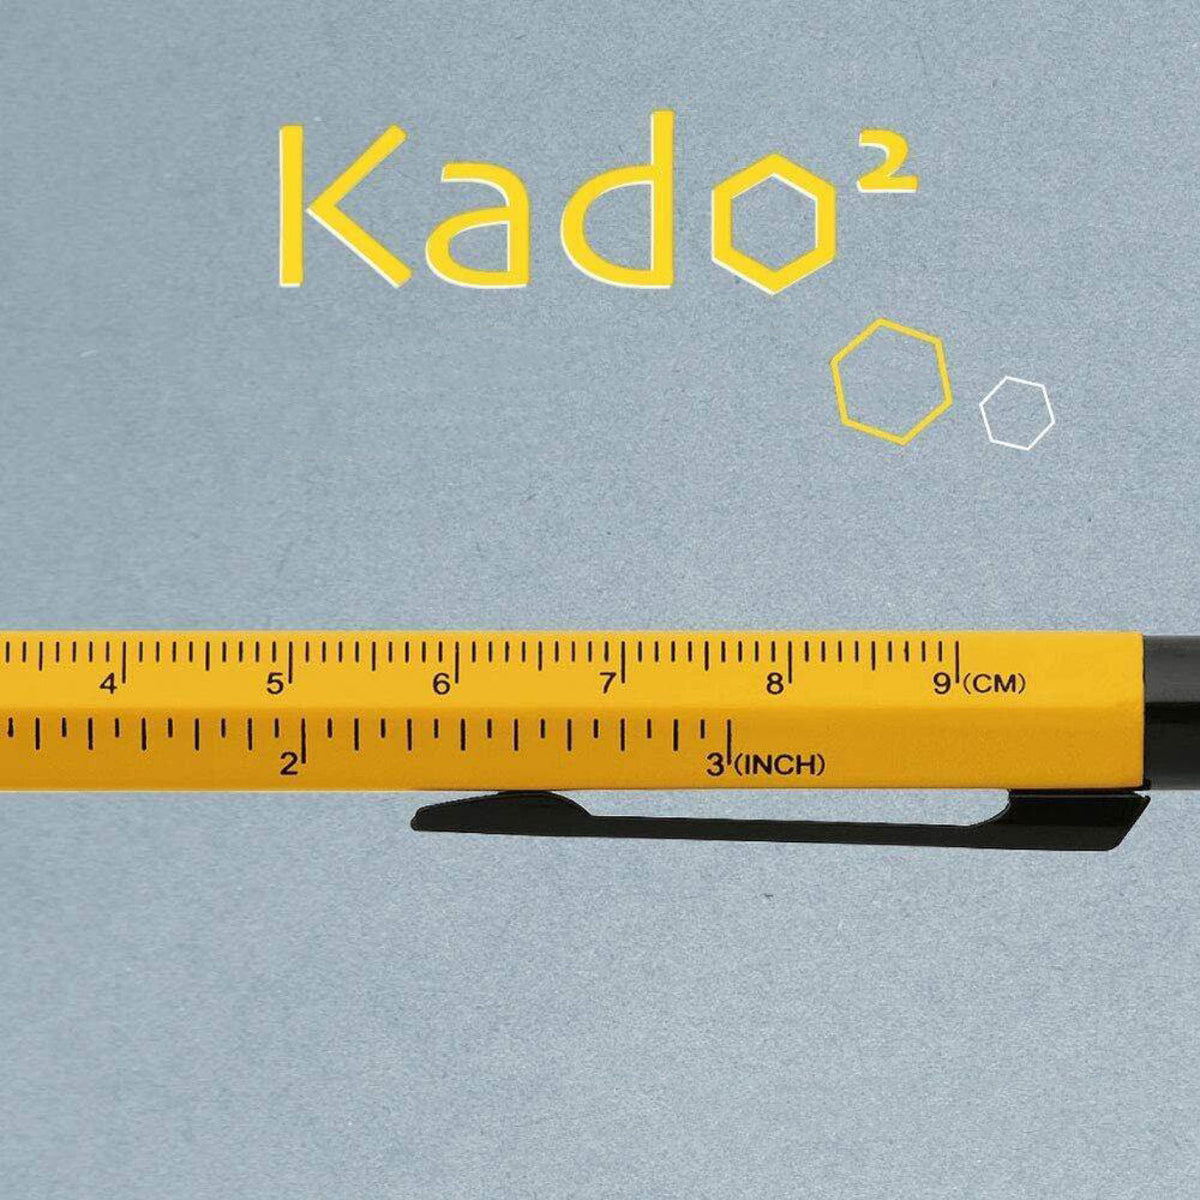 Zebra - Ballpoint Pen - Kado2 - Yellow